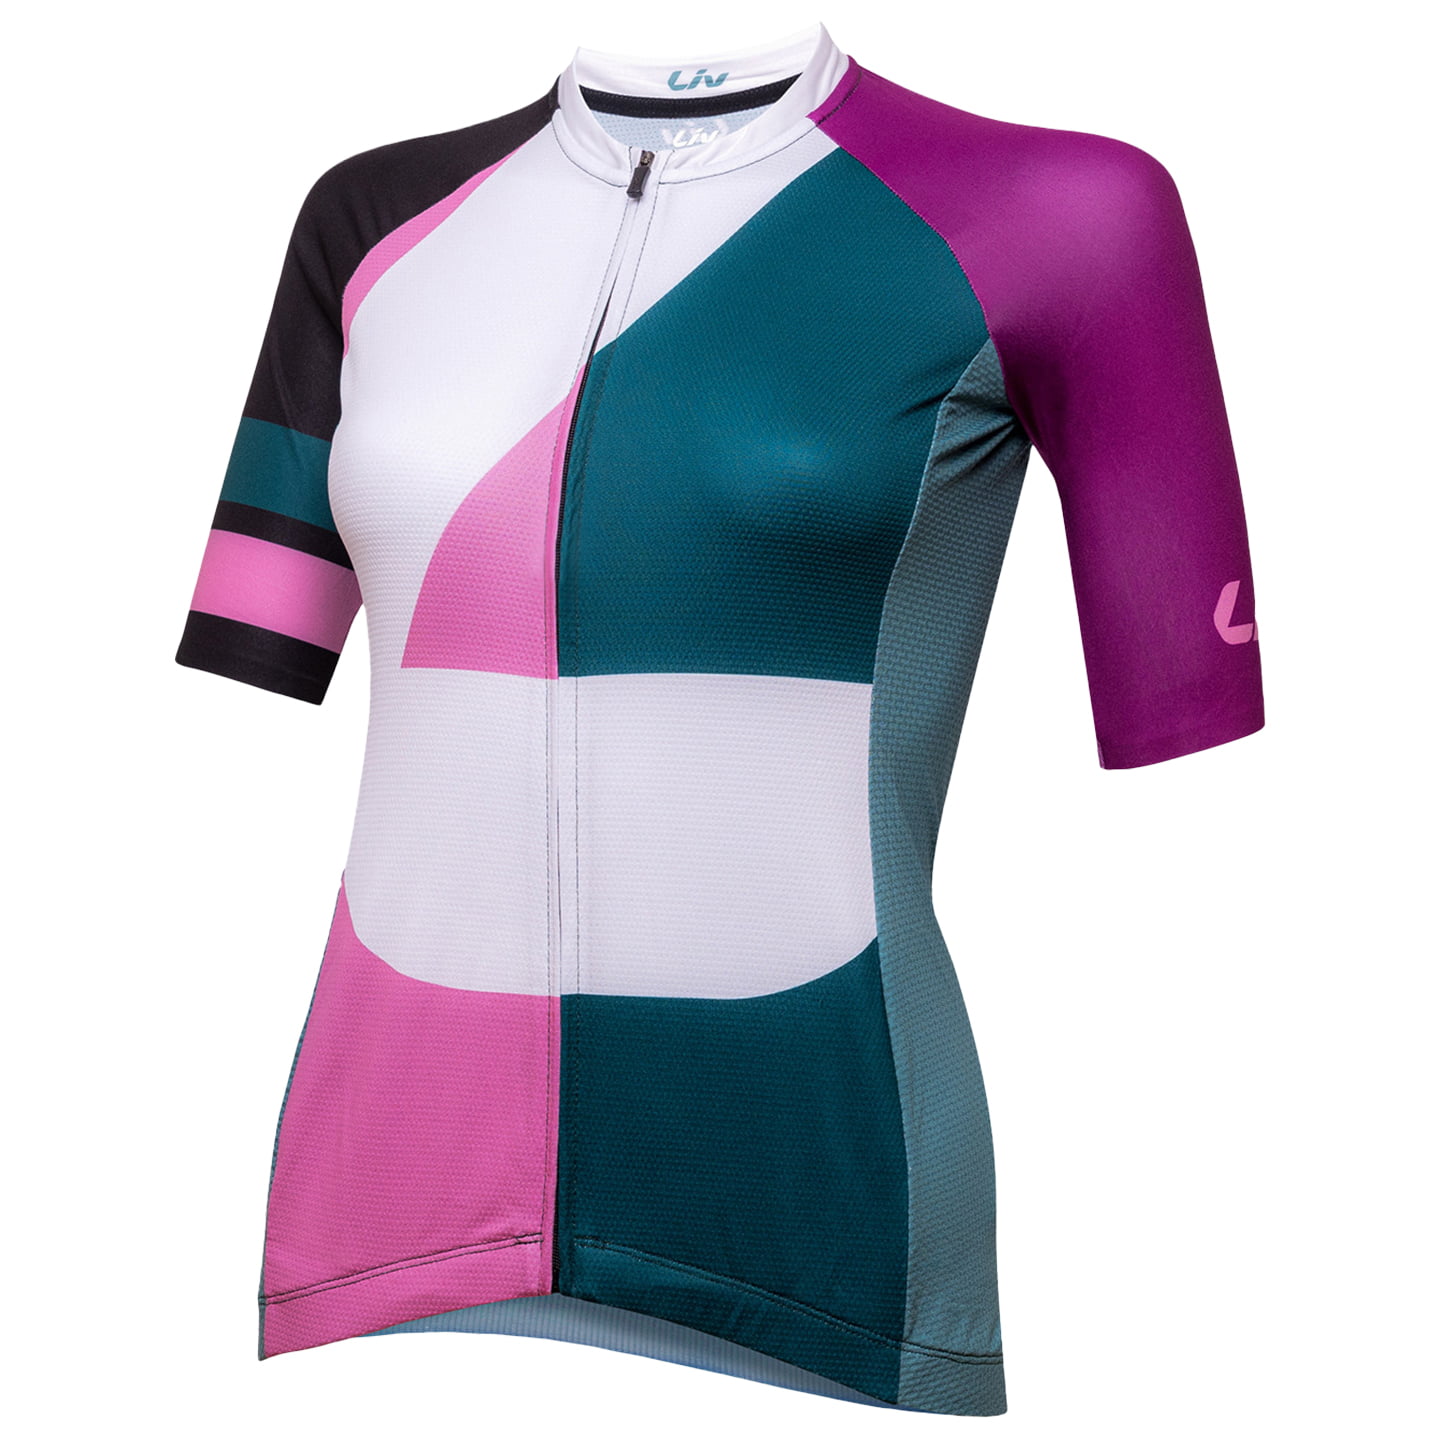 LIV Contour Women’s Jersey, size XL, Cycle jersey, Bike gear